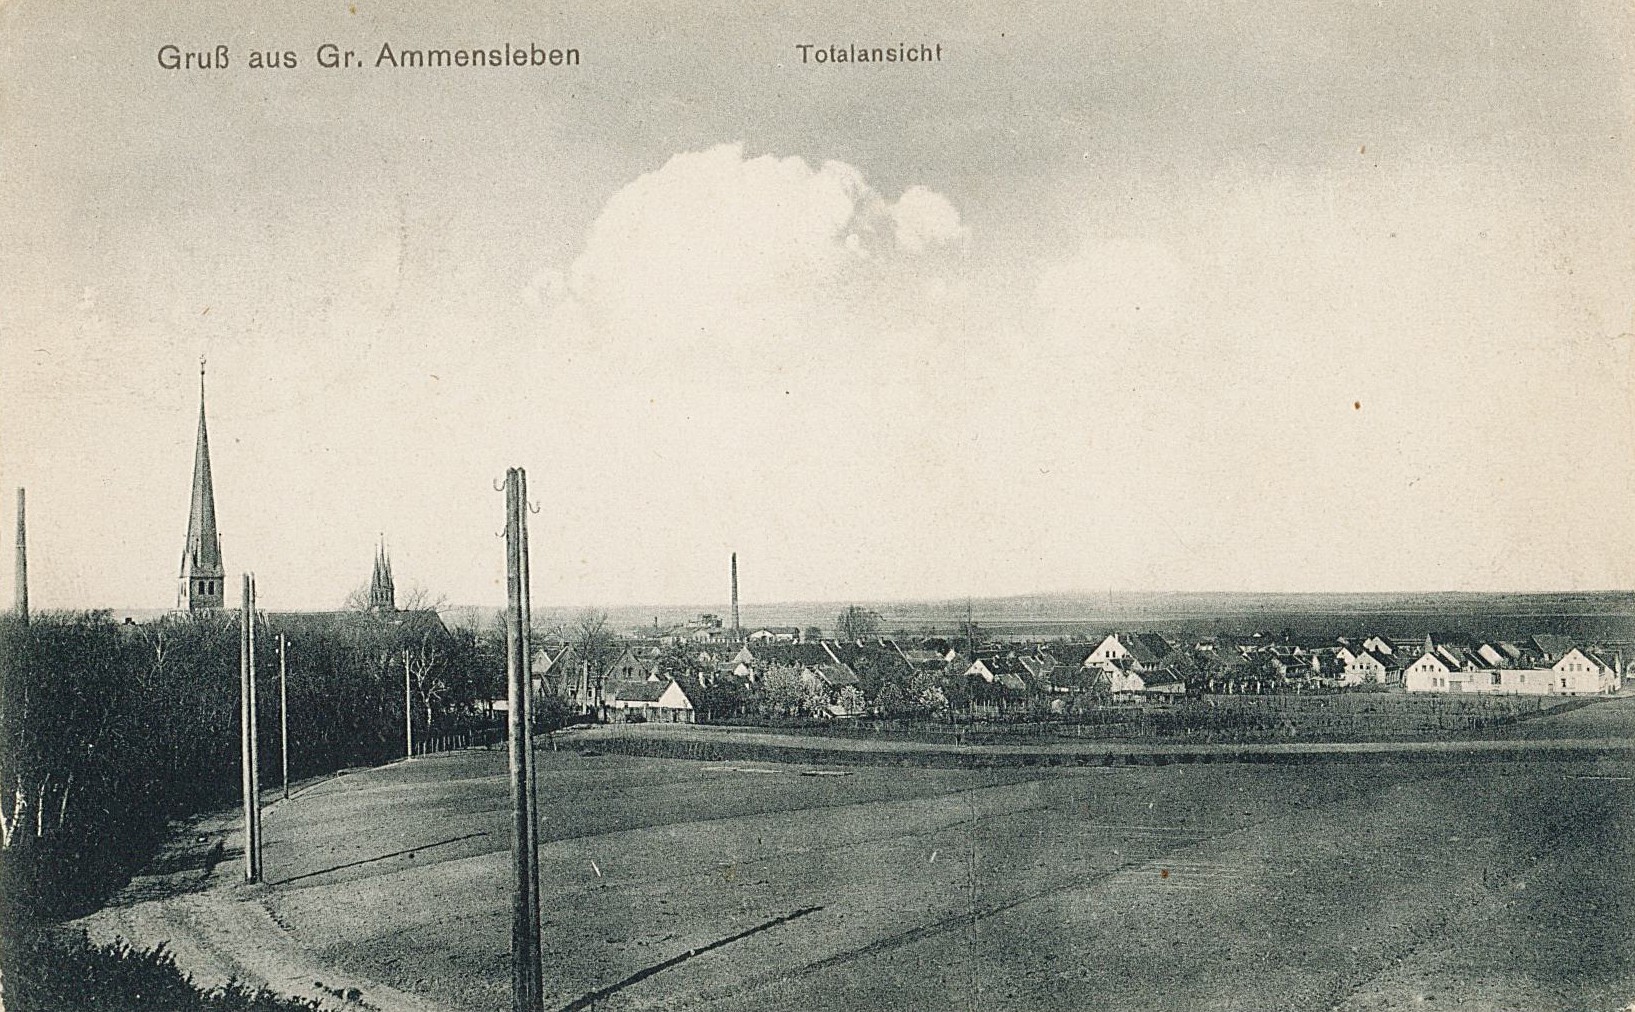 Postkarte "Gruß aus Gr. Ammensleben - Totalansicht", 15.04.1911 (Museum Wolmirstedt RR-F)